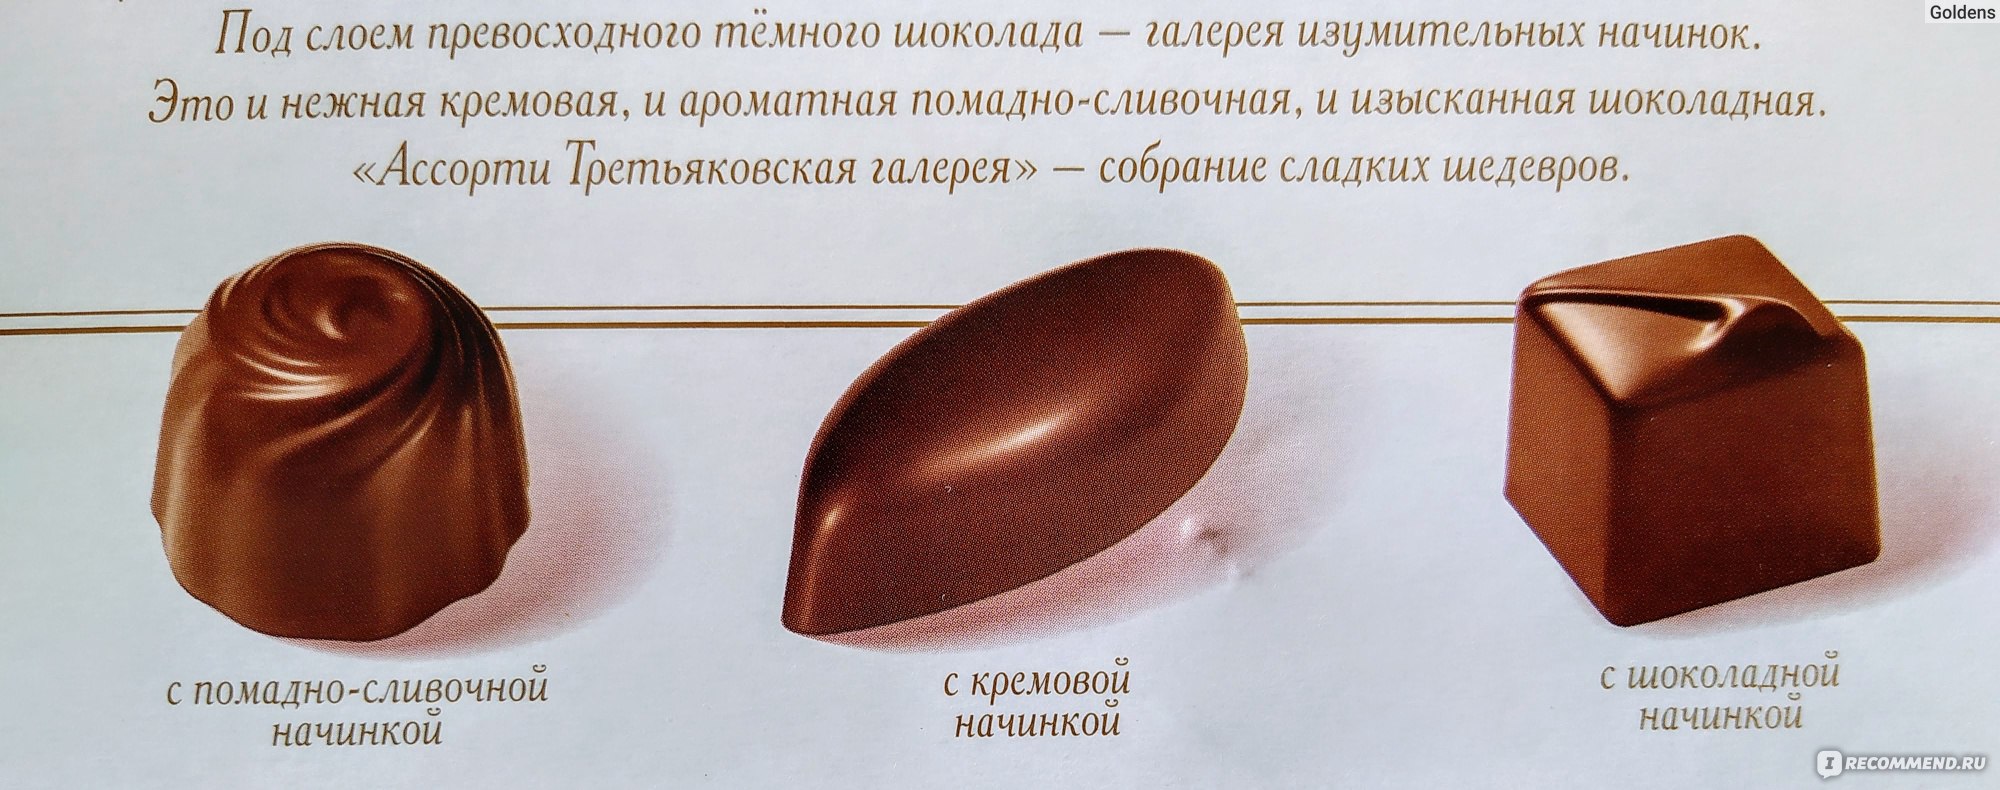 Набор шоколадных конфет красный октябрь в пеналах слайдерах